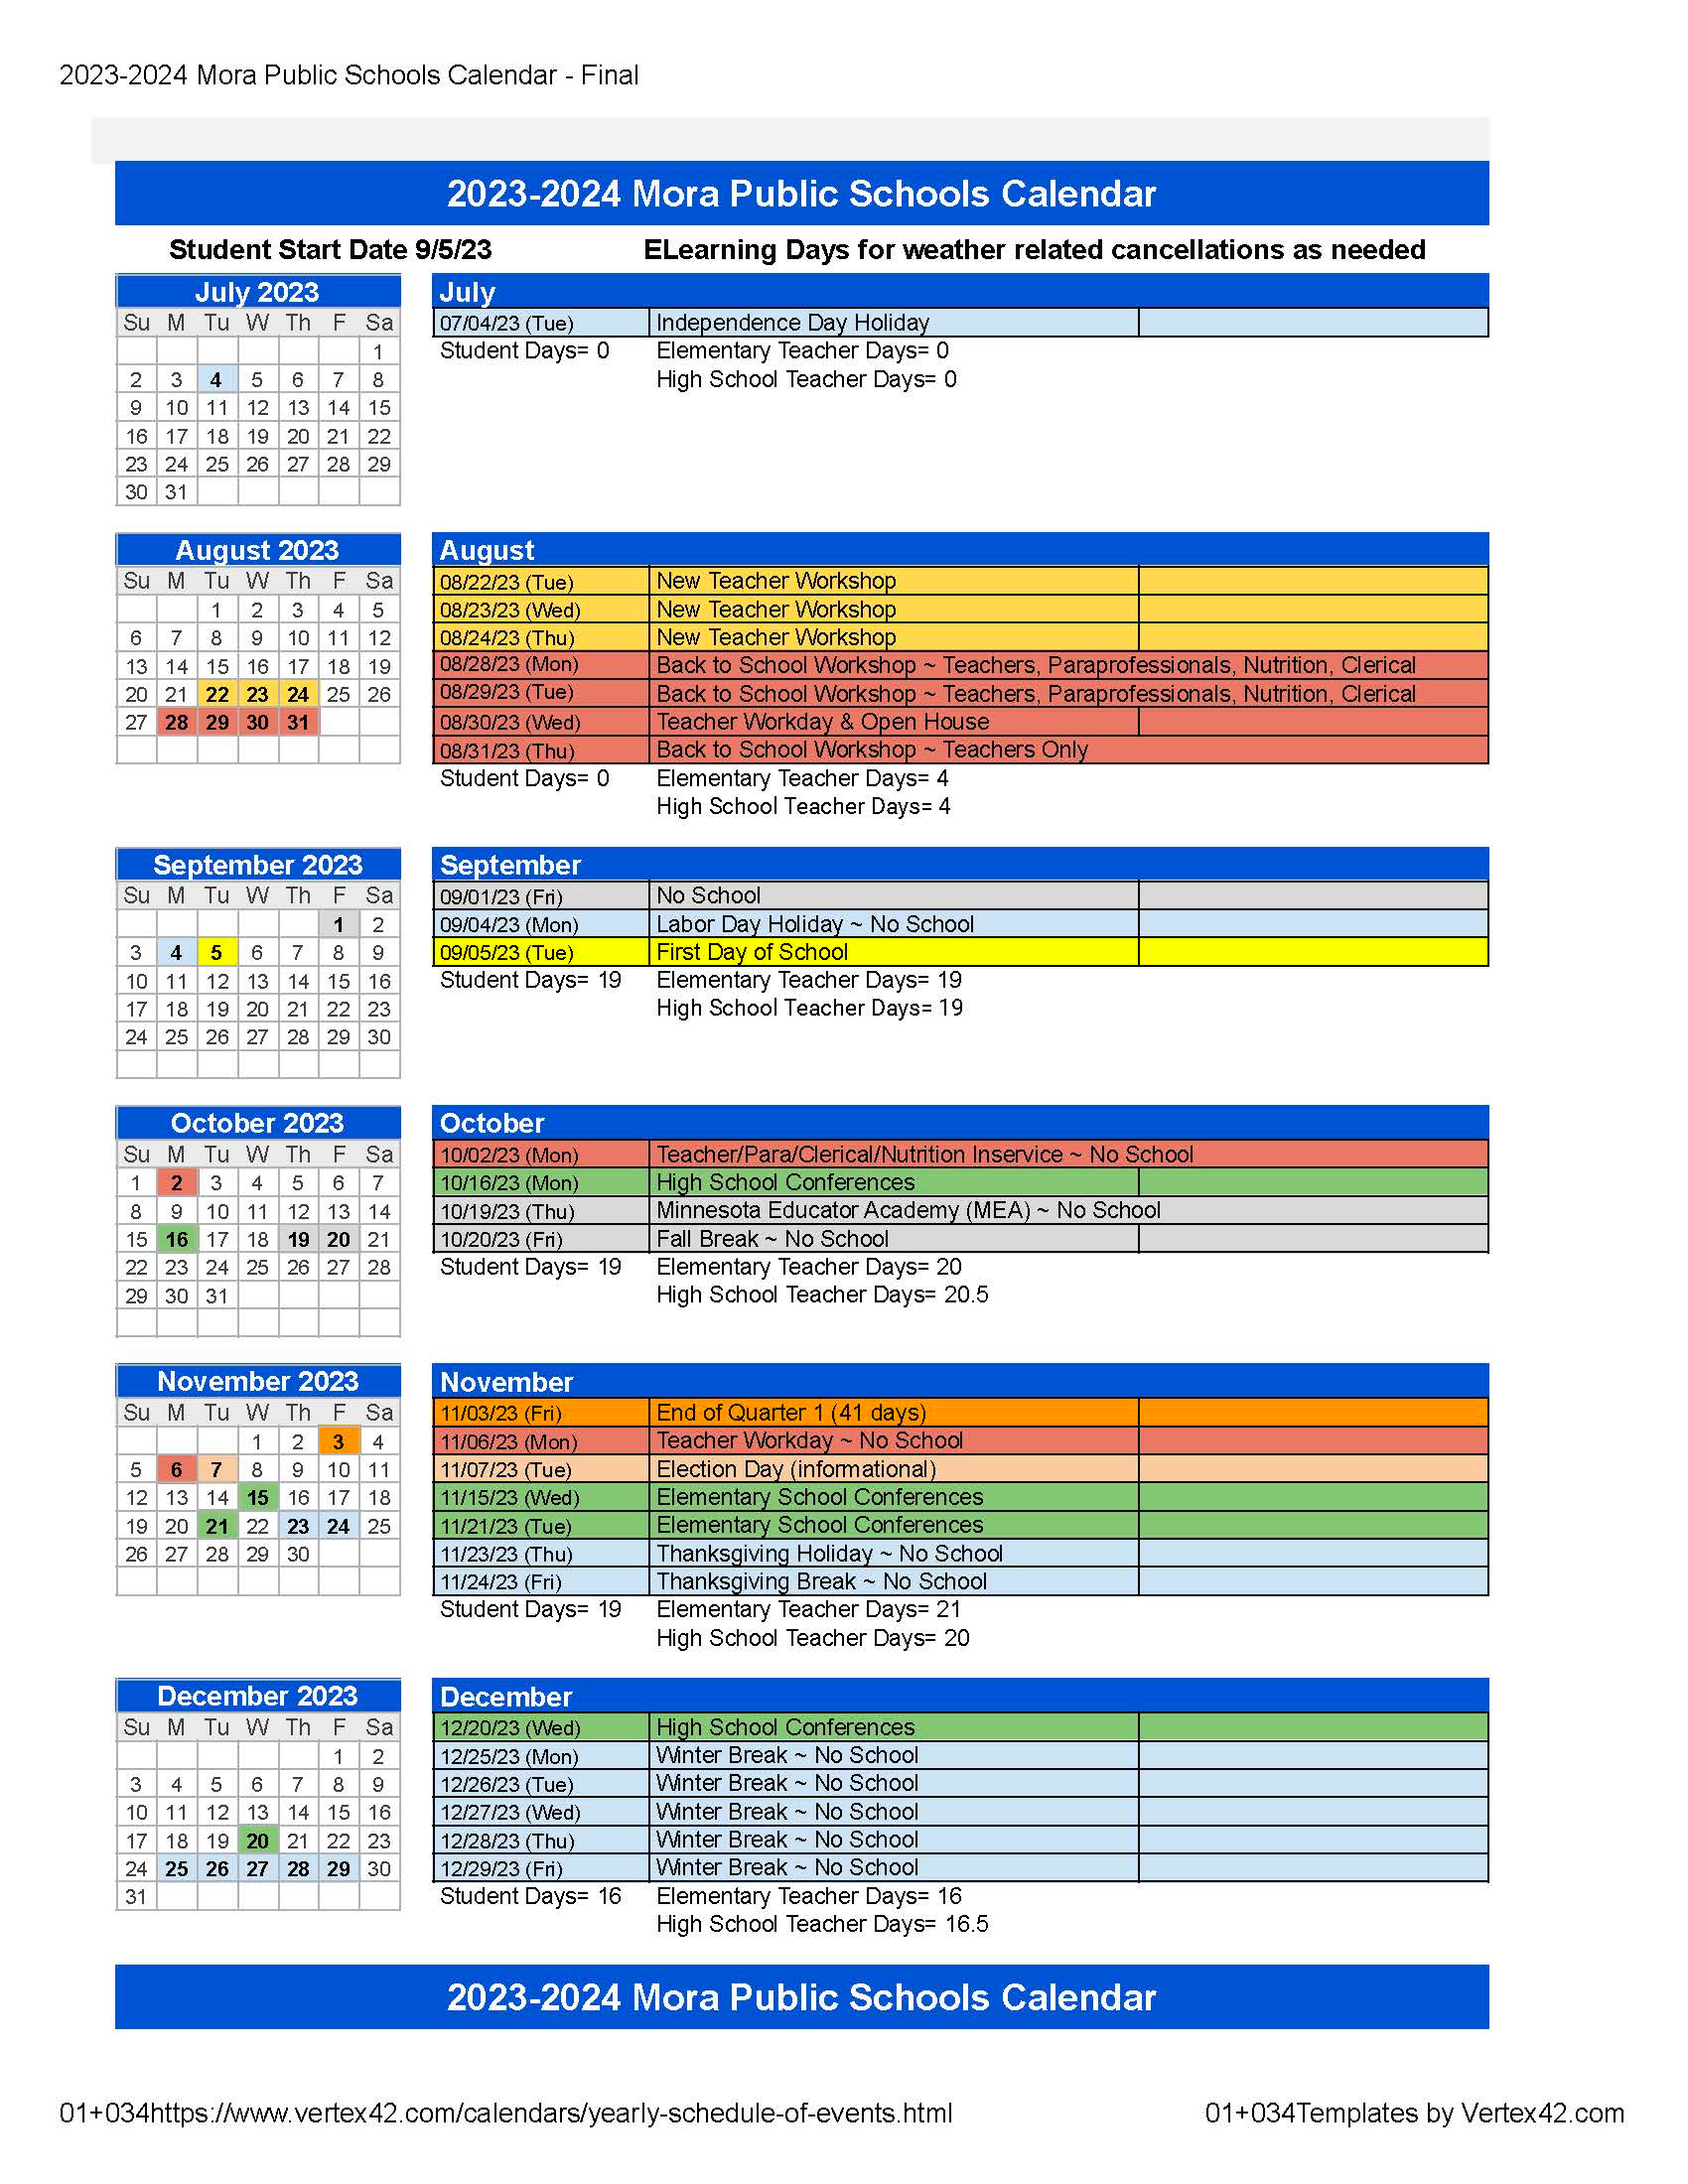 2023-2024 School Year Calendar